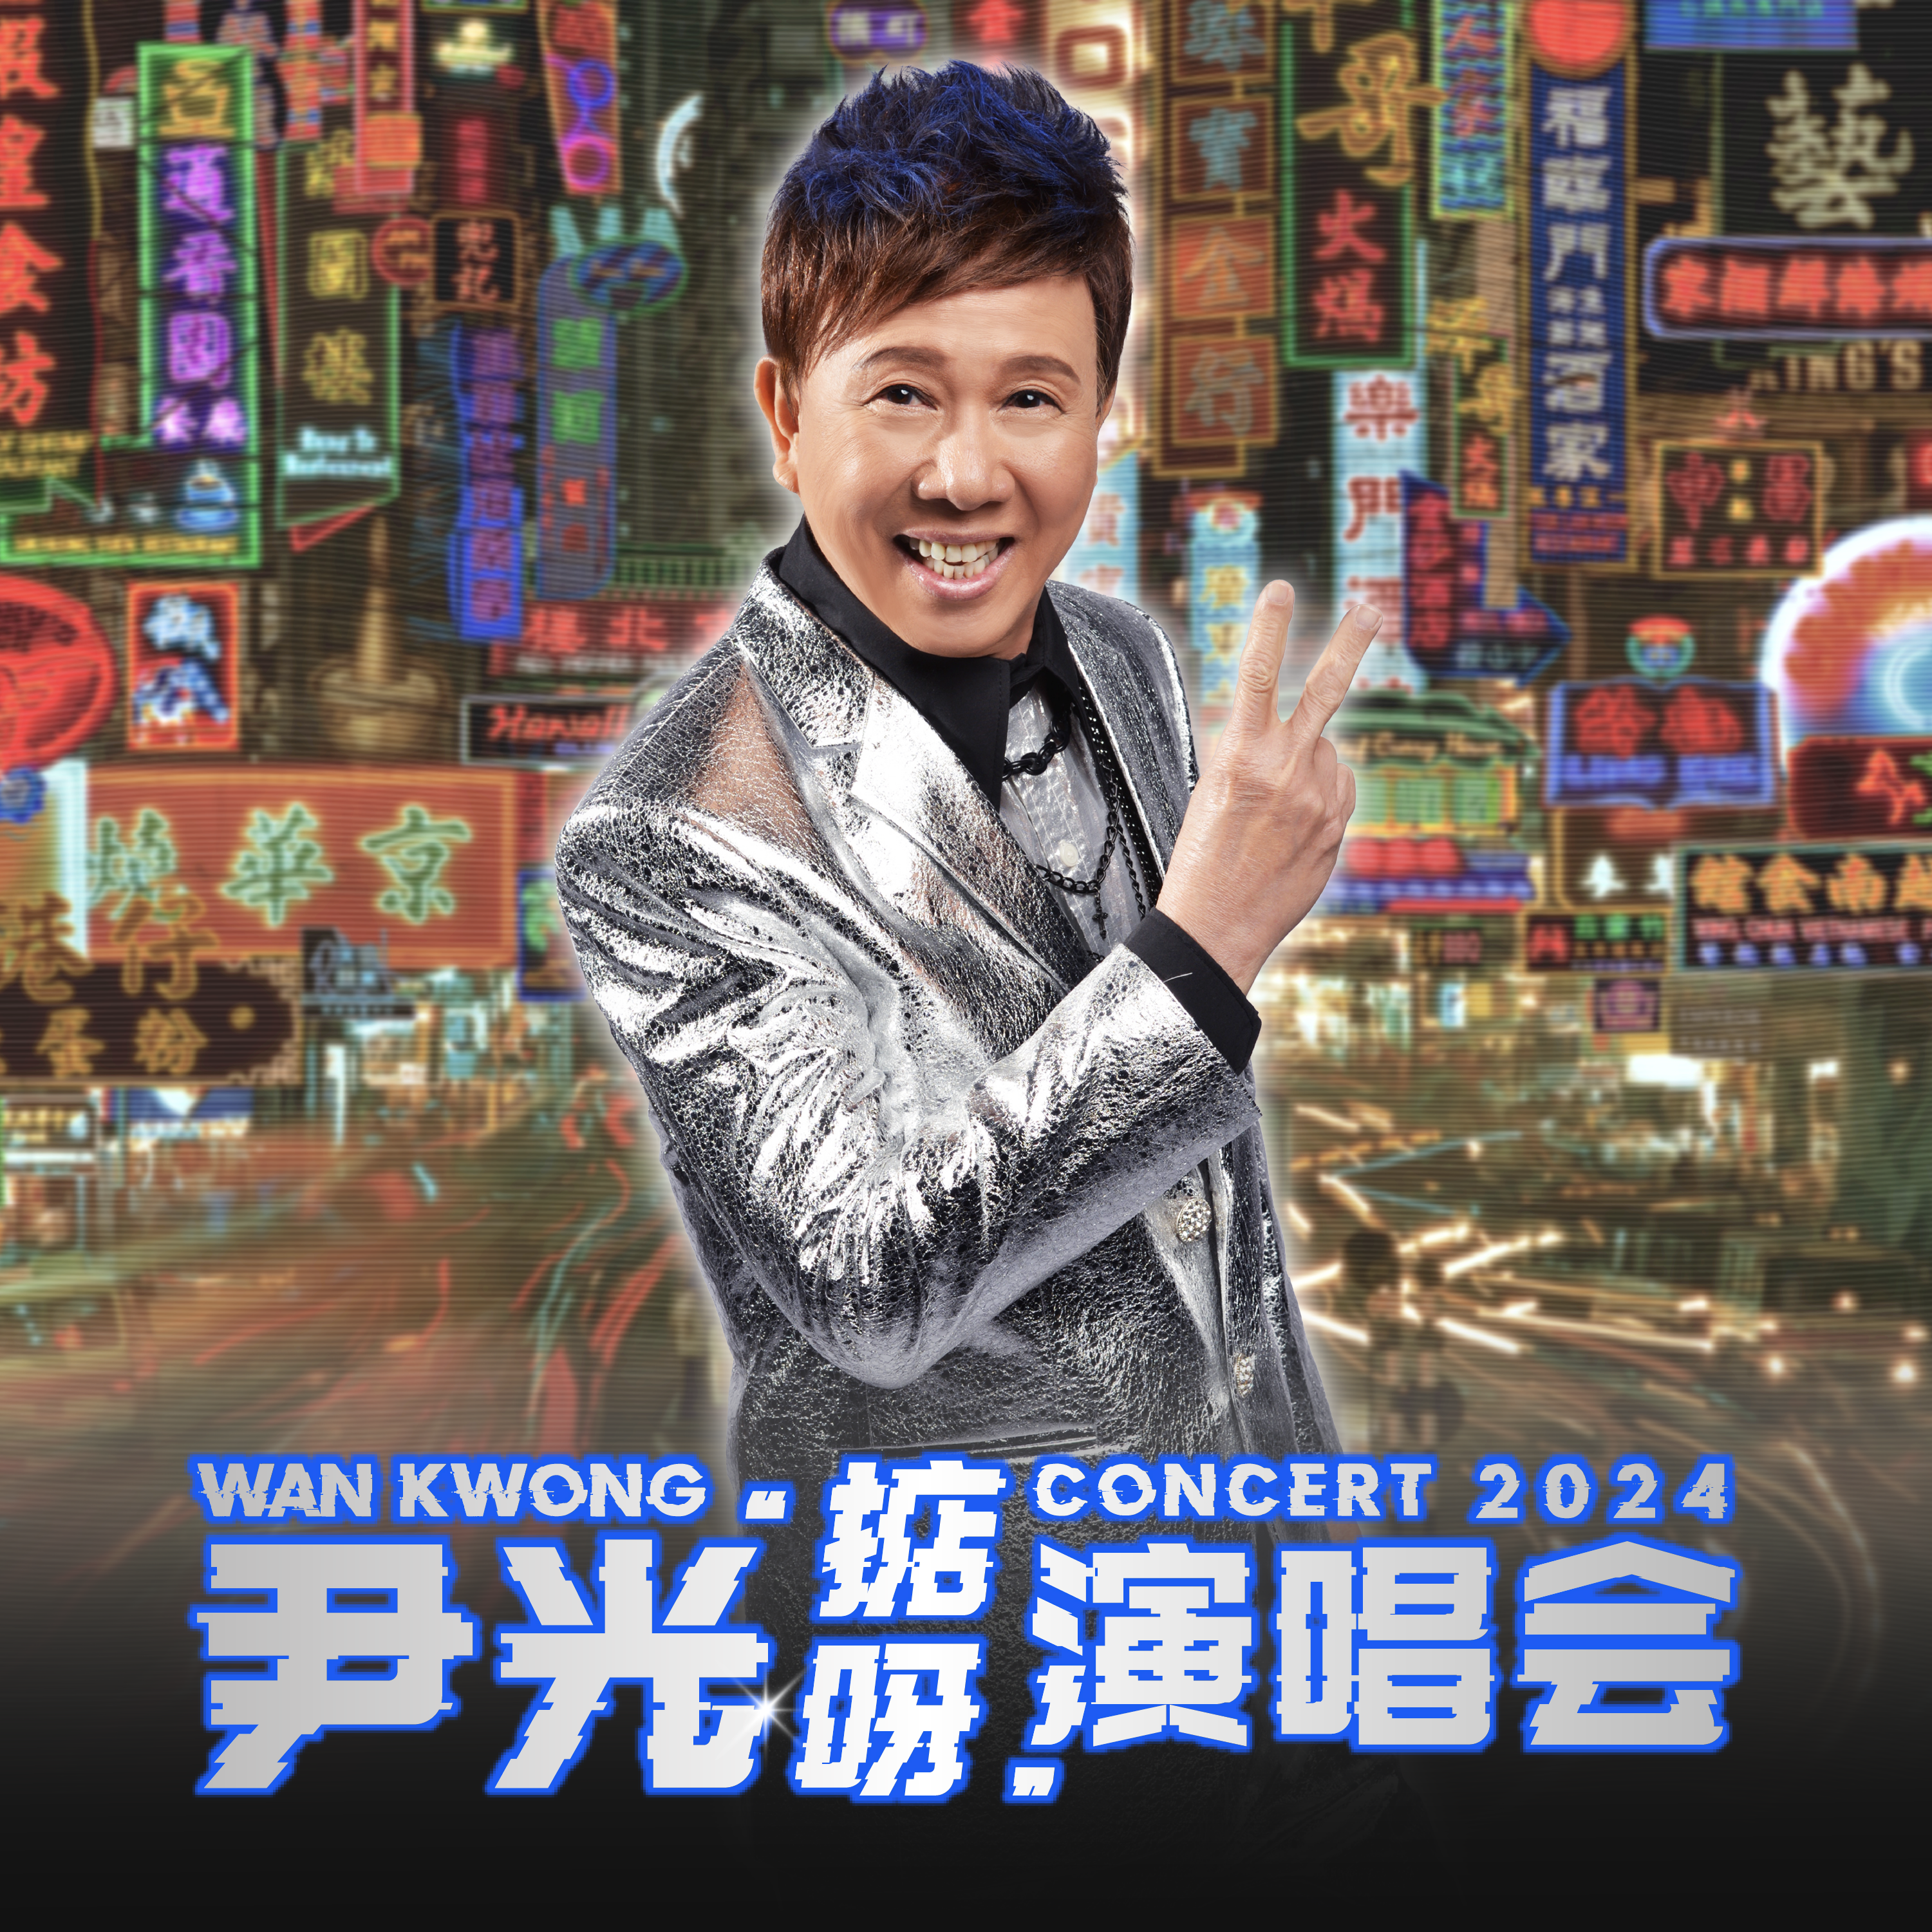 Wan Kwong Concert 2024 